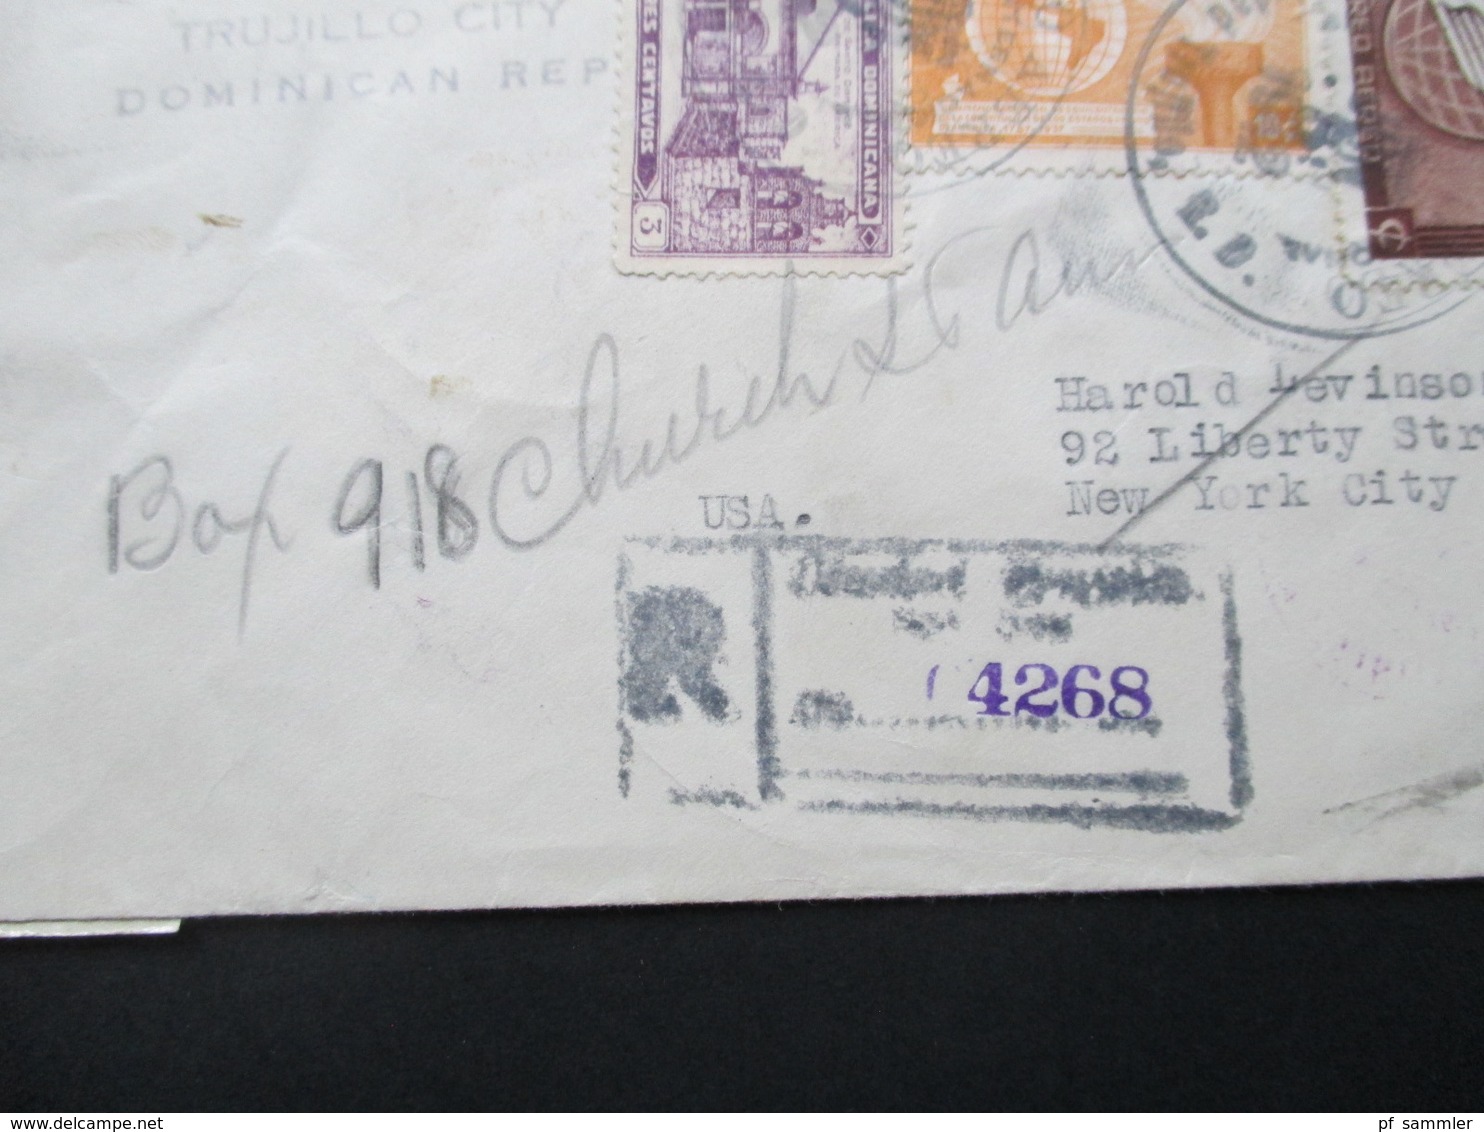 Zensurbeleg Domikanische Republik. Air Mail / Luftpost Nach New York. Examined By 3839. 9 Stempel!! - Dominikanische Rep.